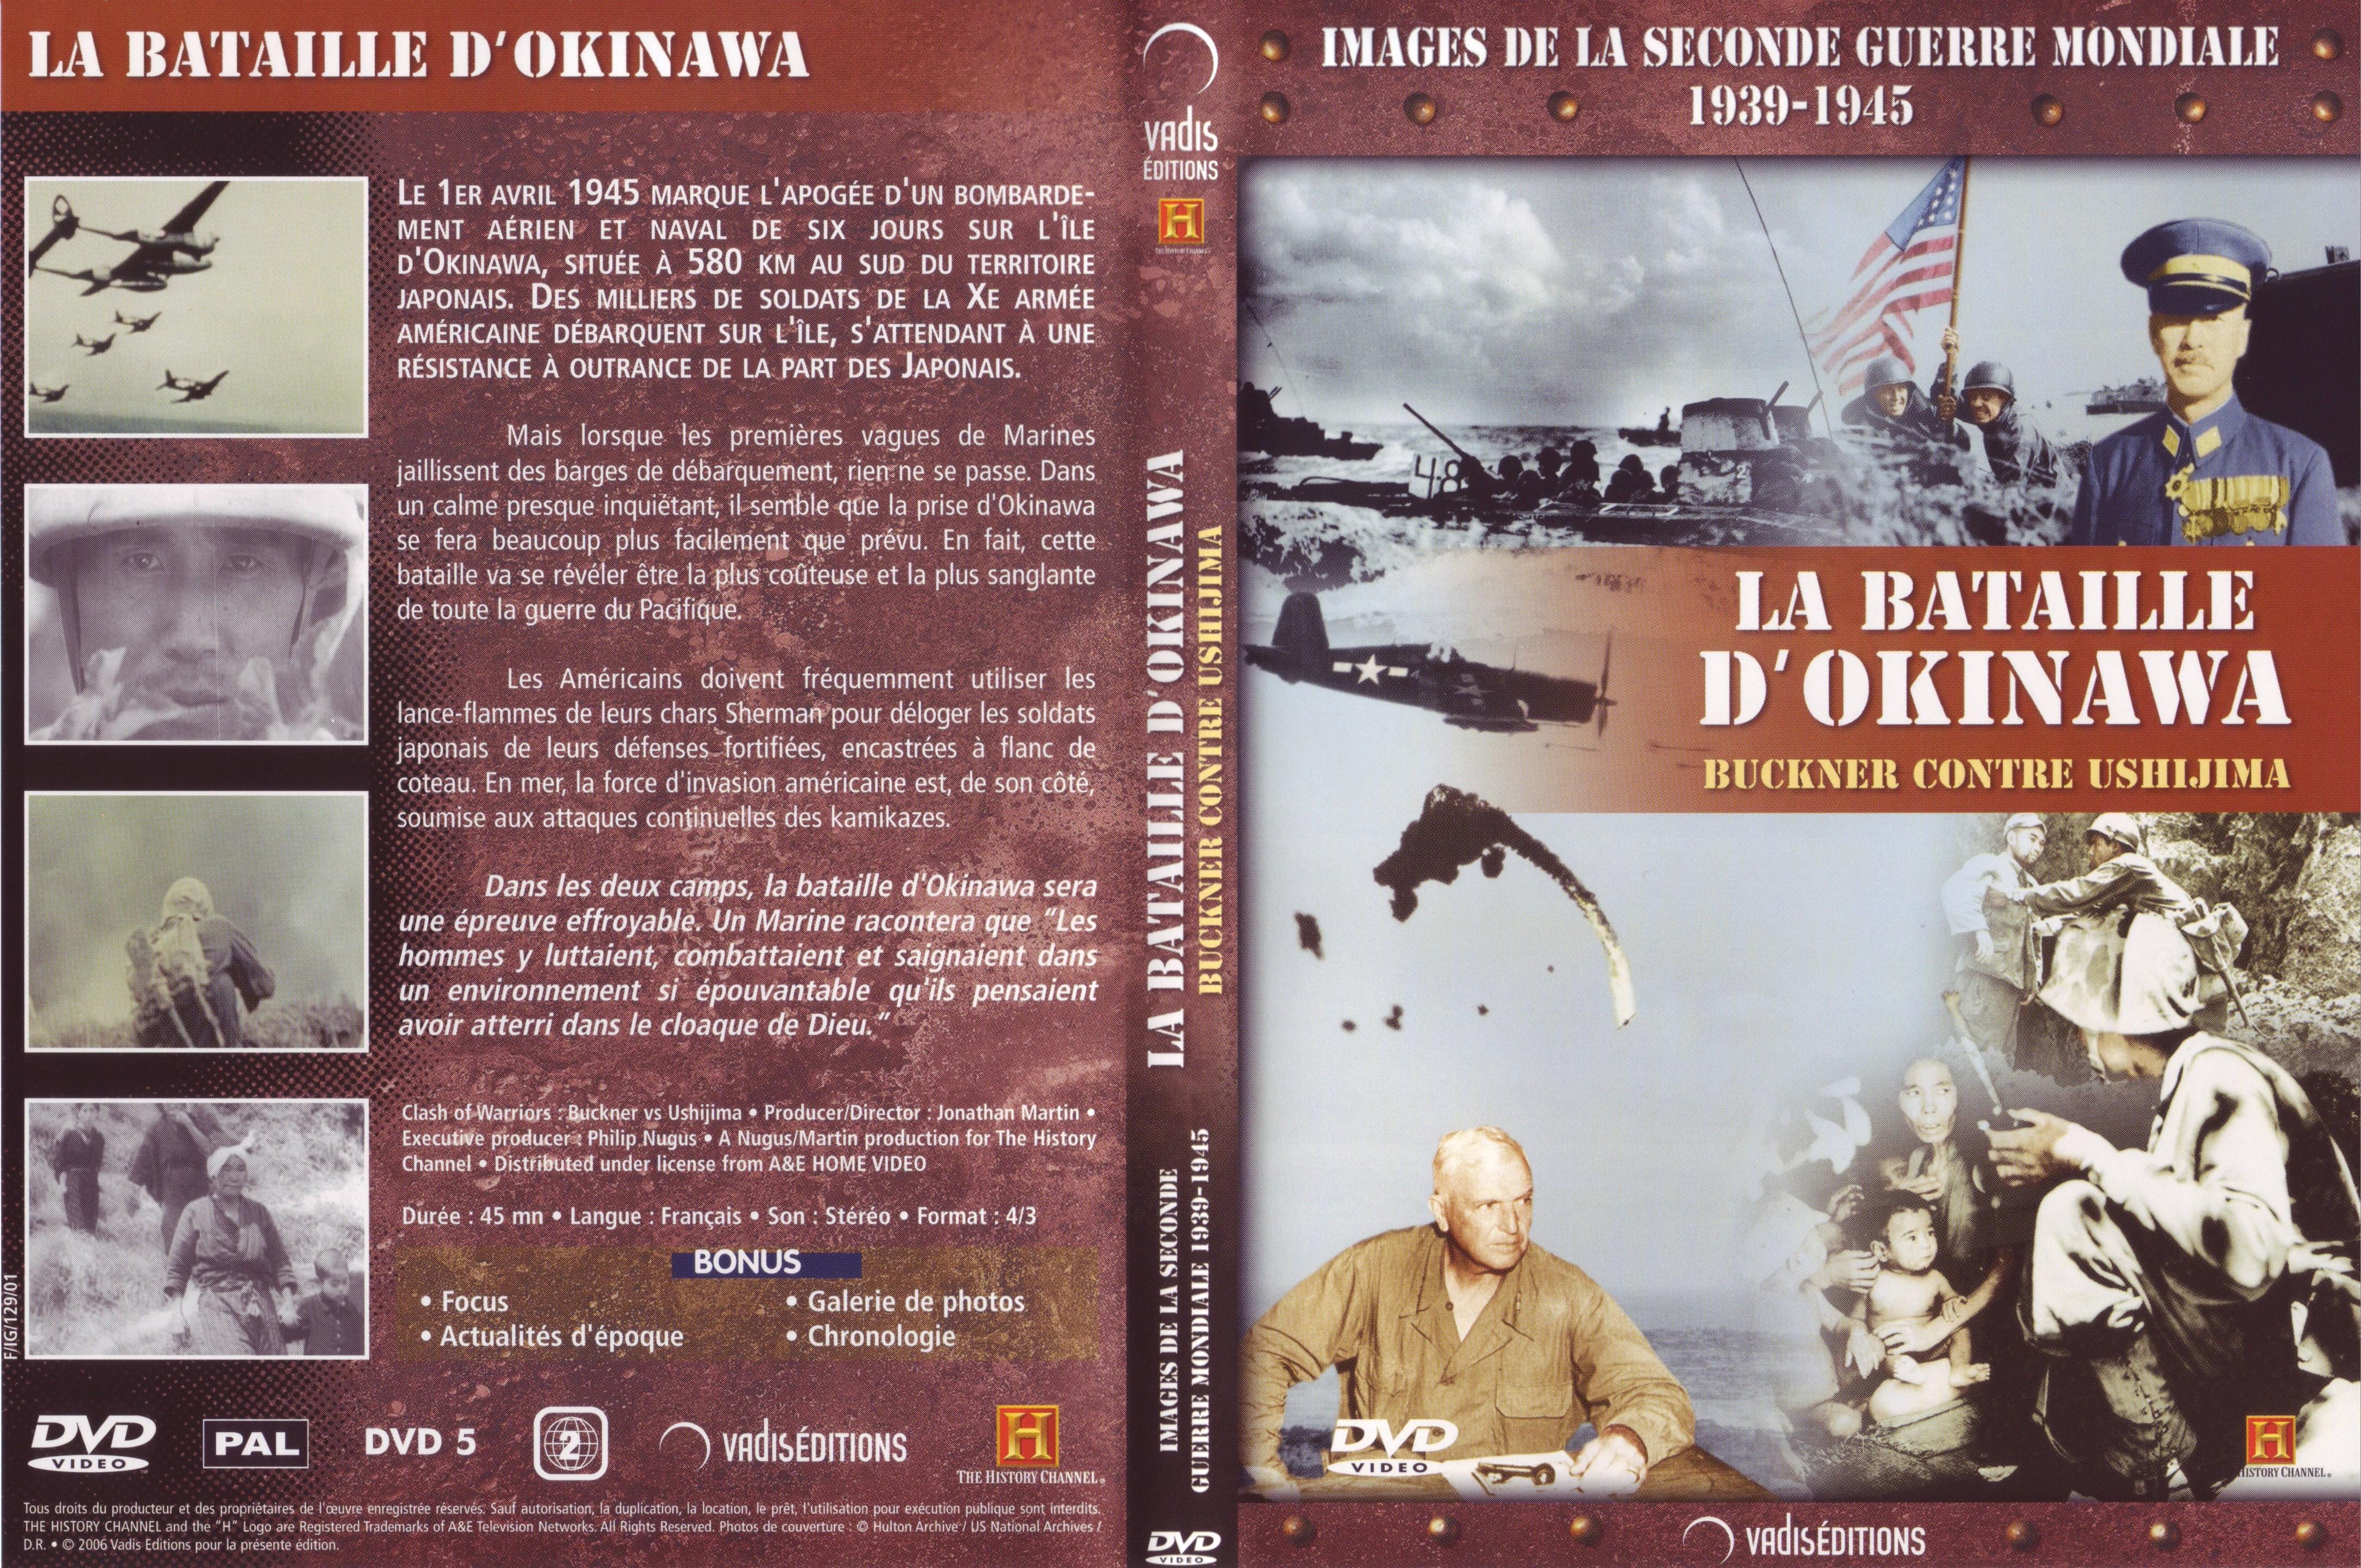 Jaquette DVD Images de la seconde guerre mondiale - La bataille d